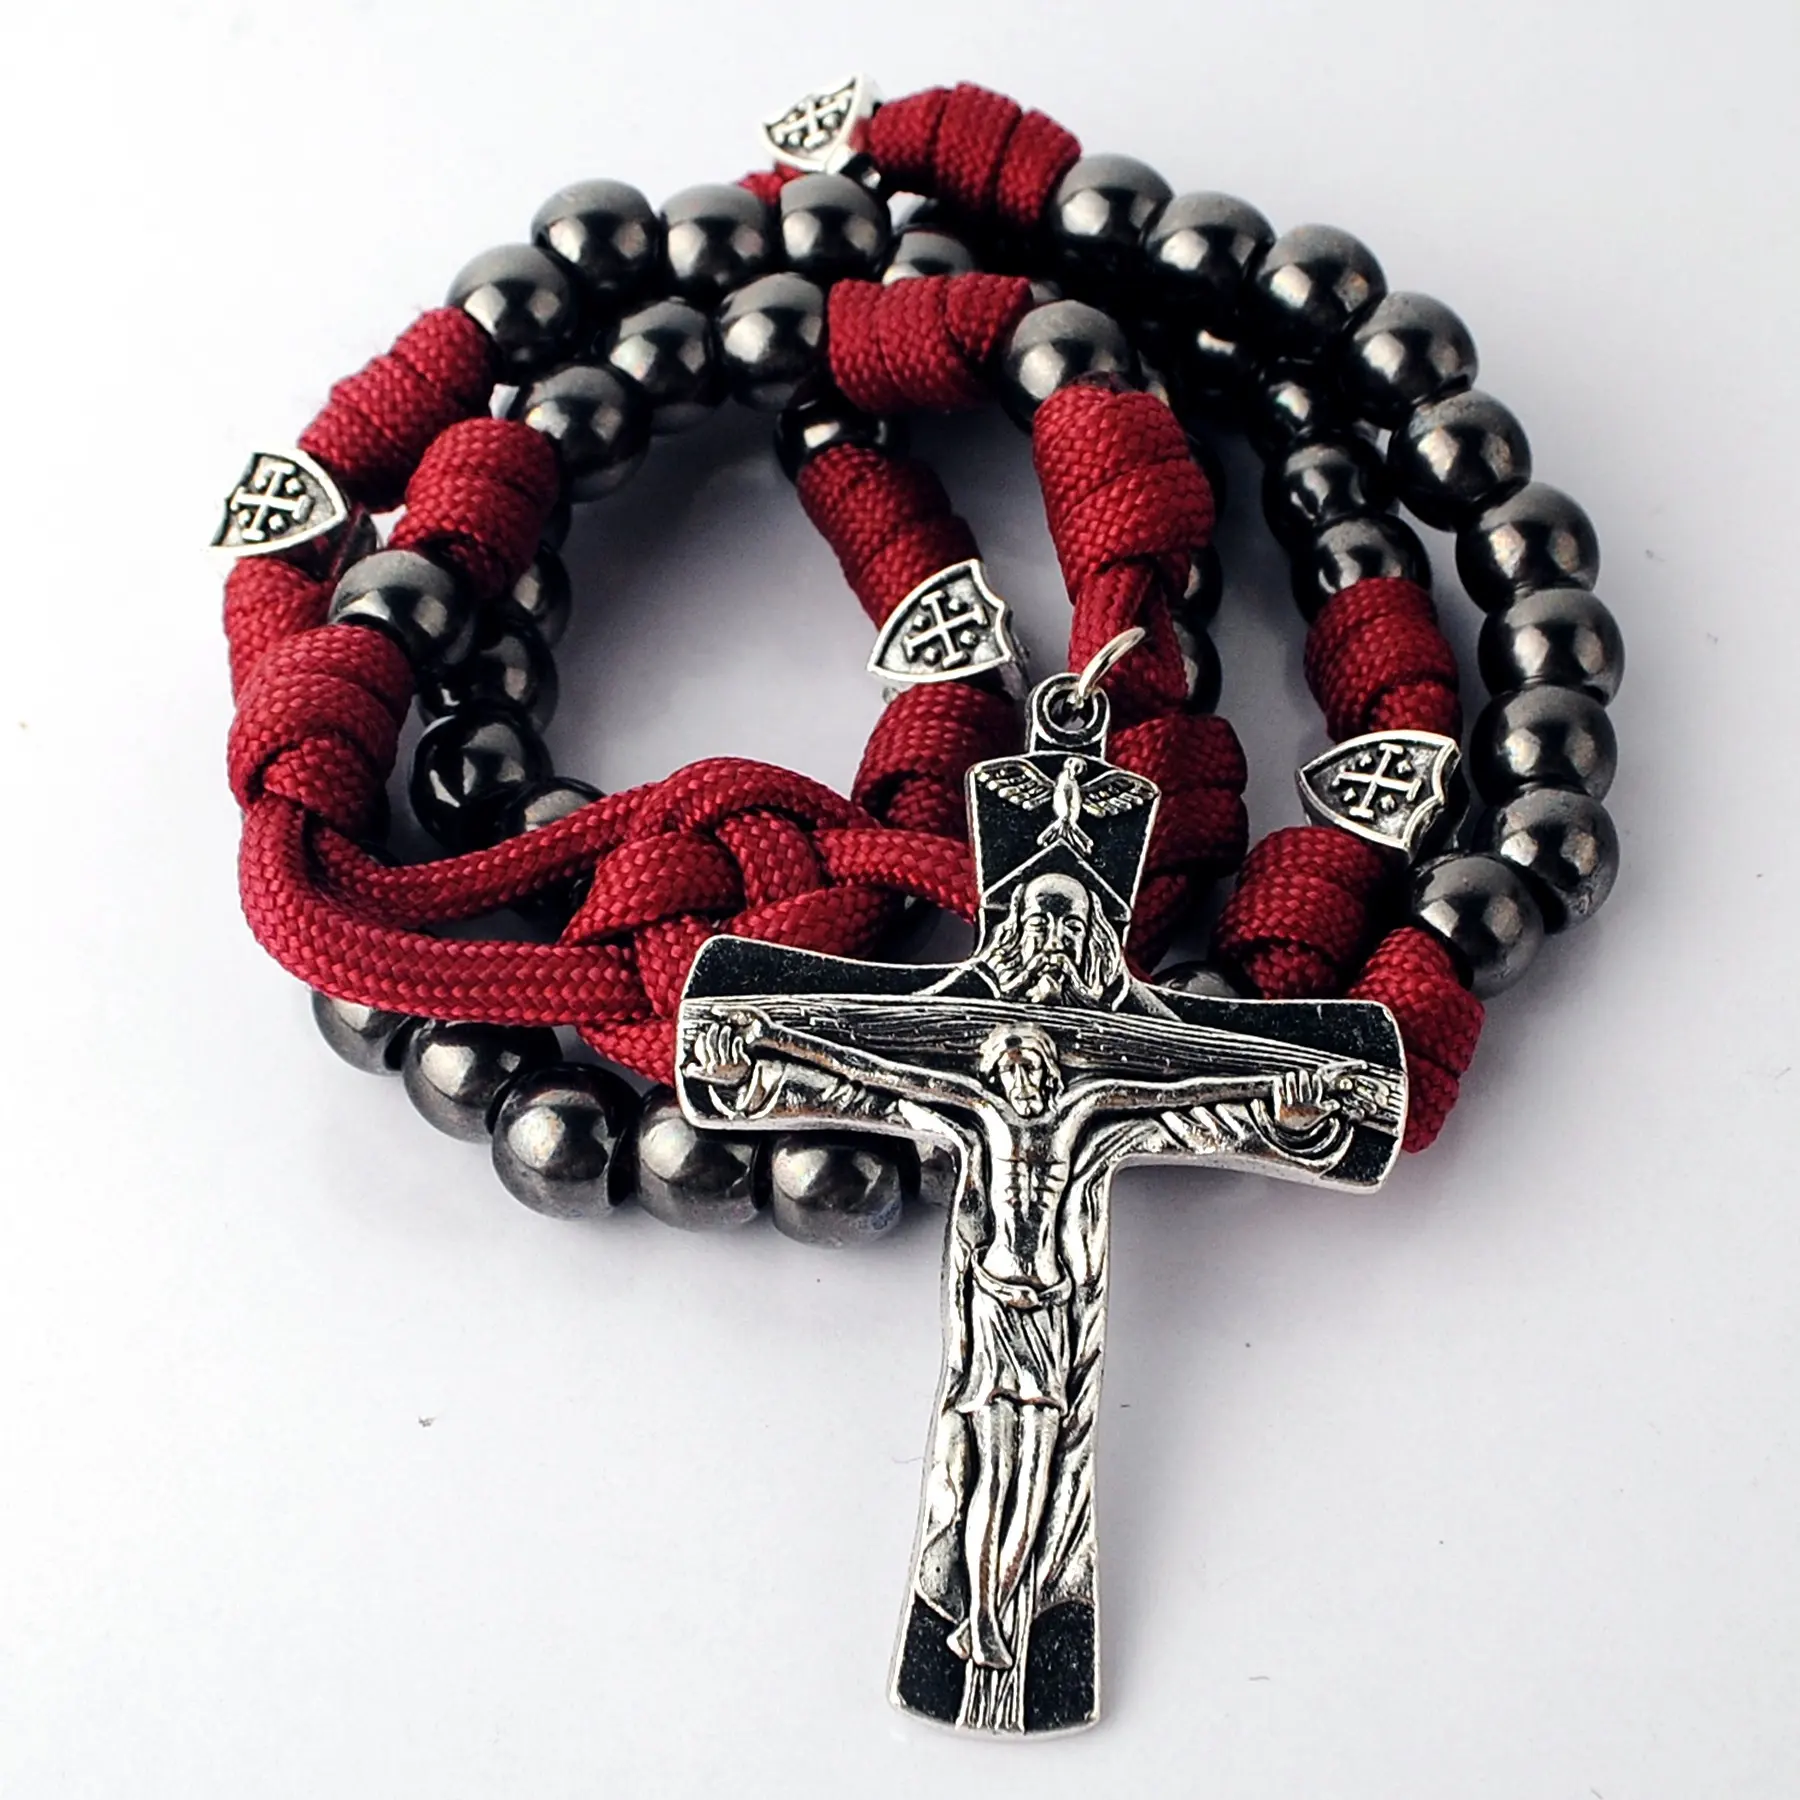 Schwarze Metall perlen mit Jerusalem Cross Shield Perlen Robuste Paracord Rosenkranz Religiöse katholische Halskette Große Zink legierung Herren